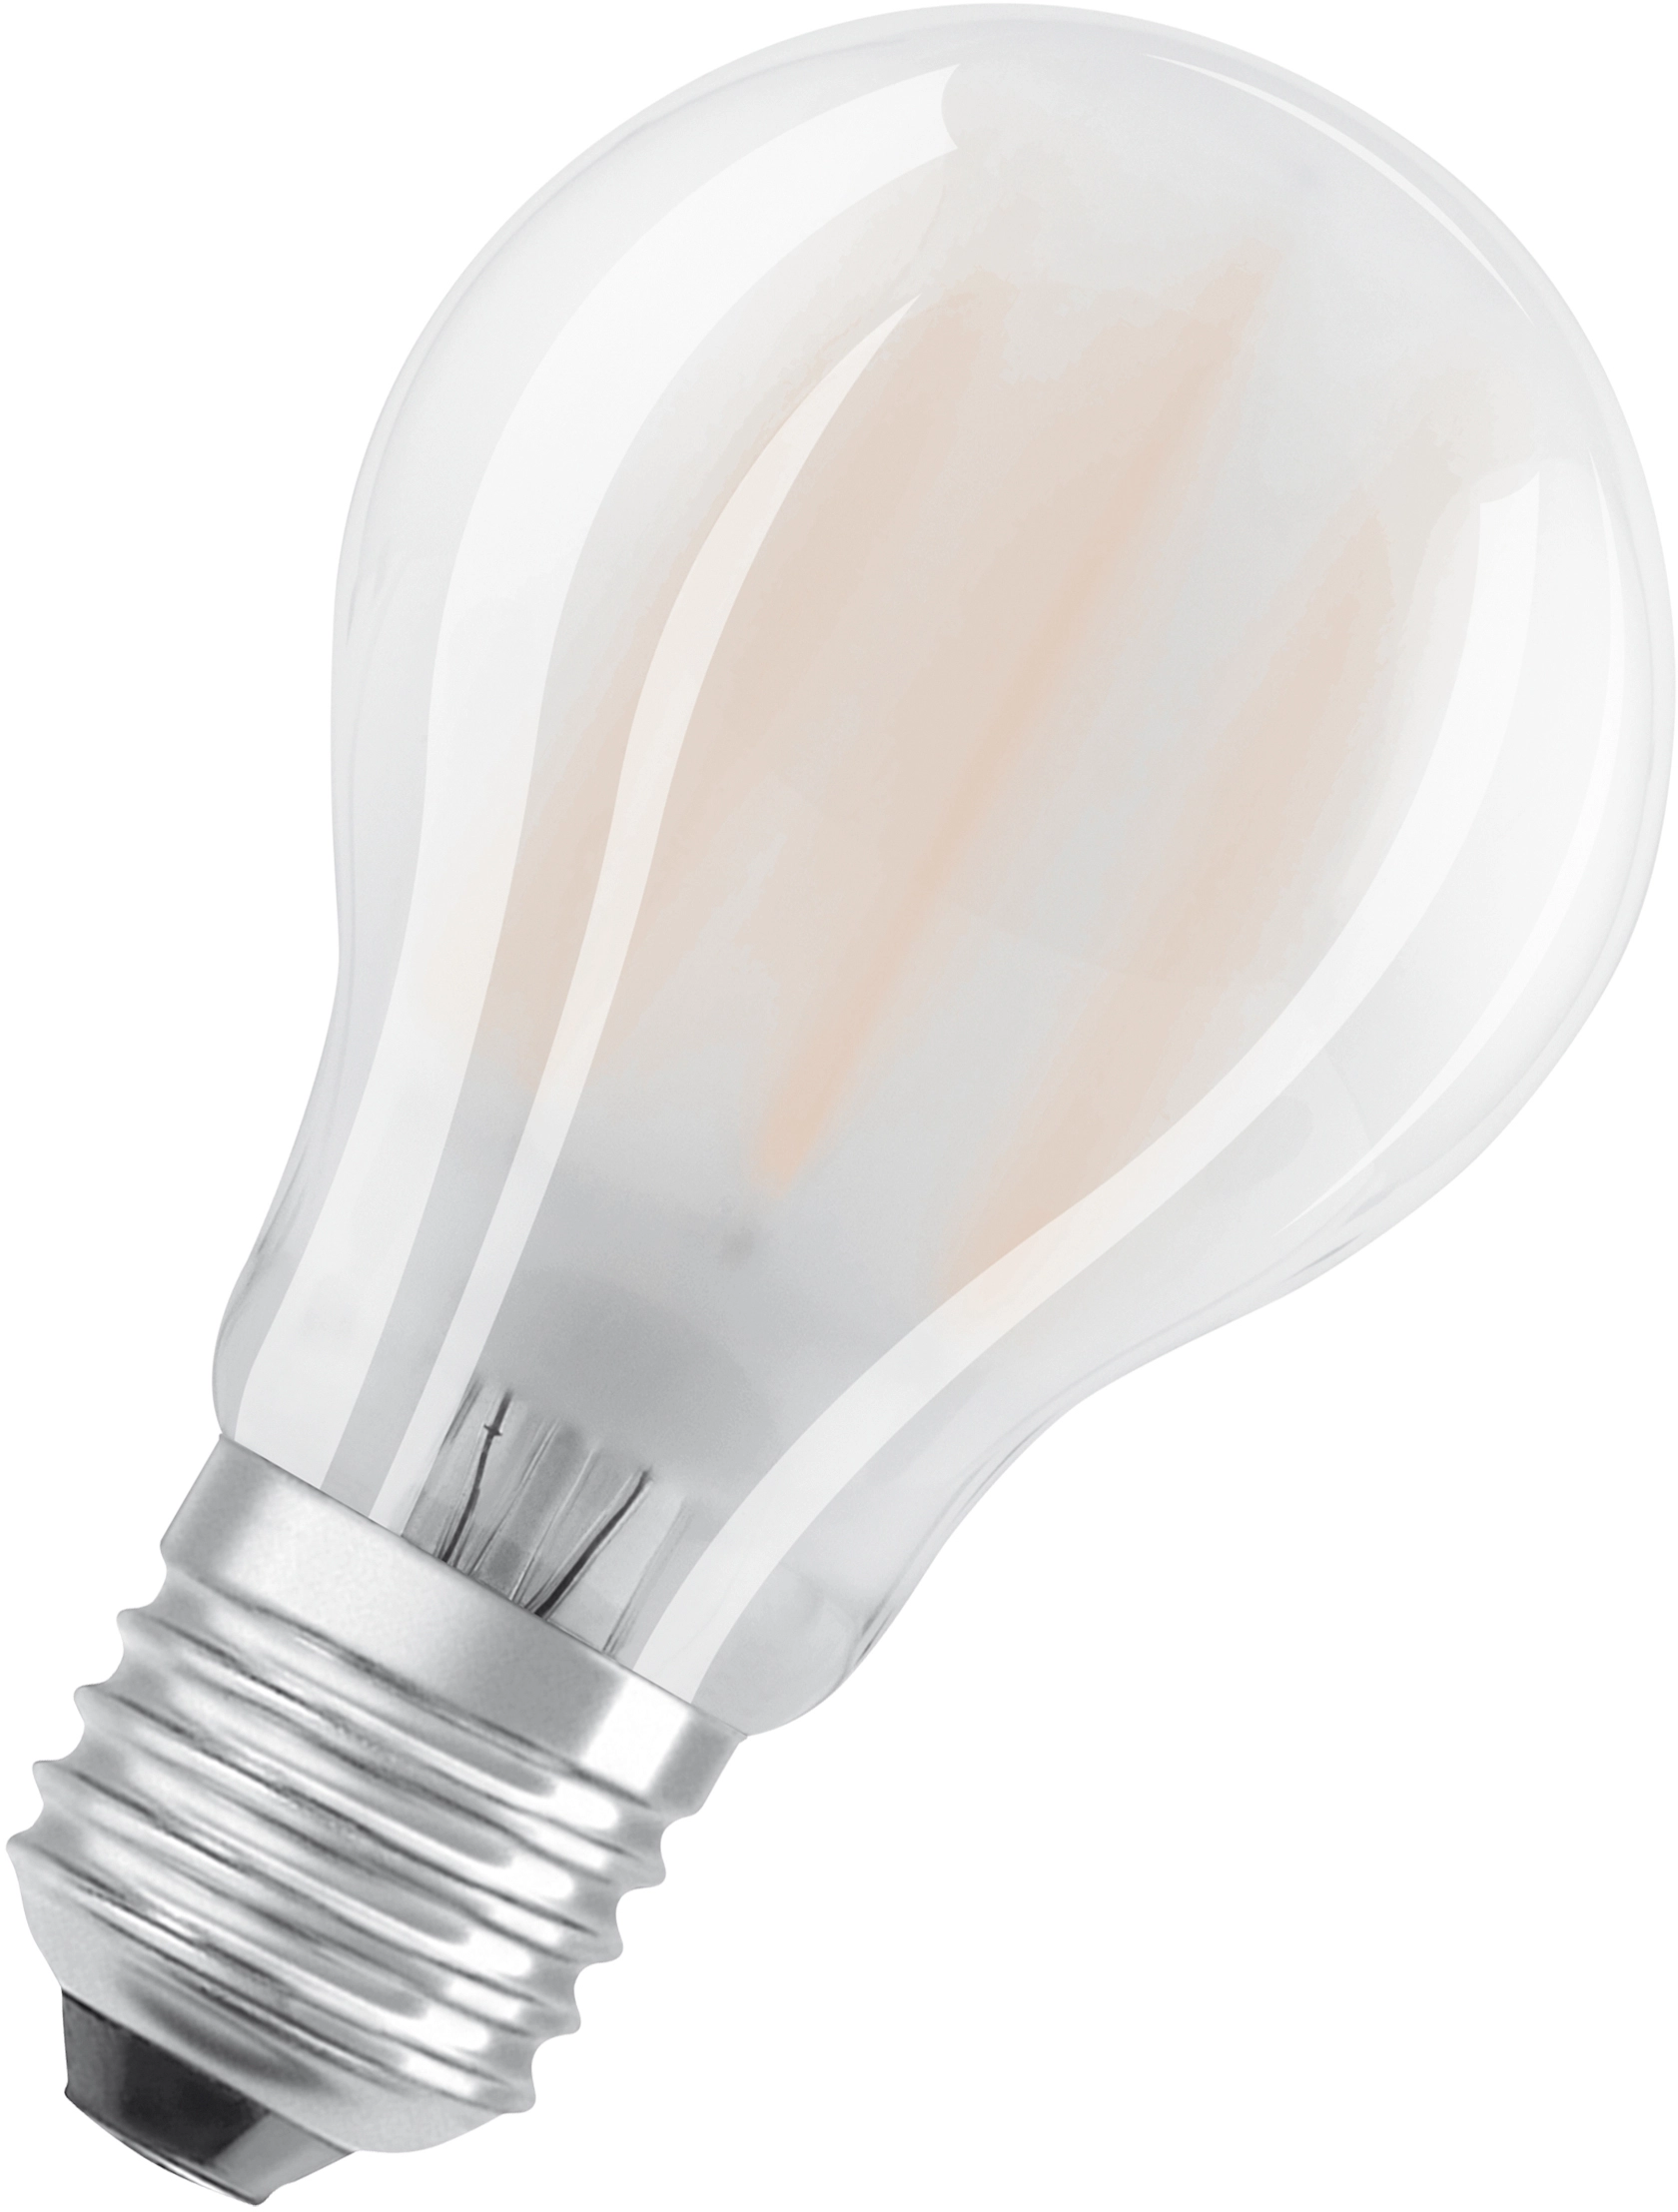 Lampadina LED a bulbo E27 806 lm 6.5 W 6x6 cm bianco neutro